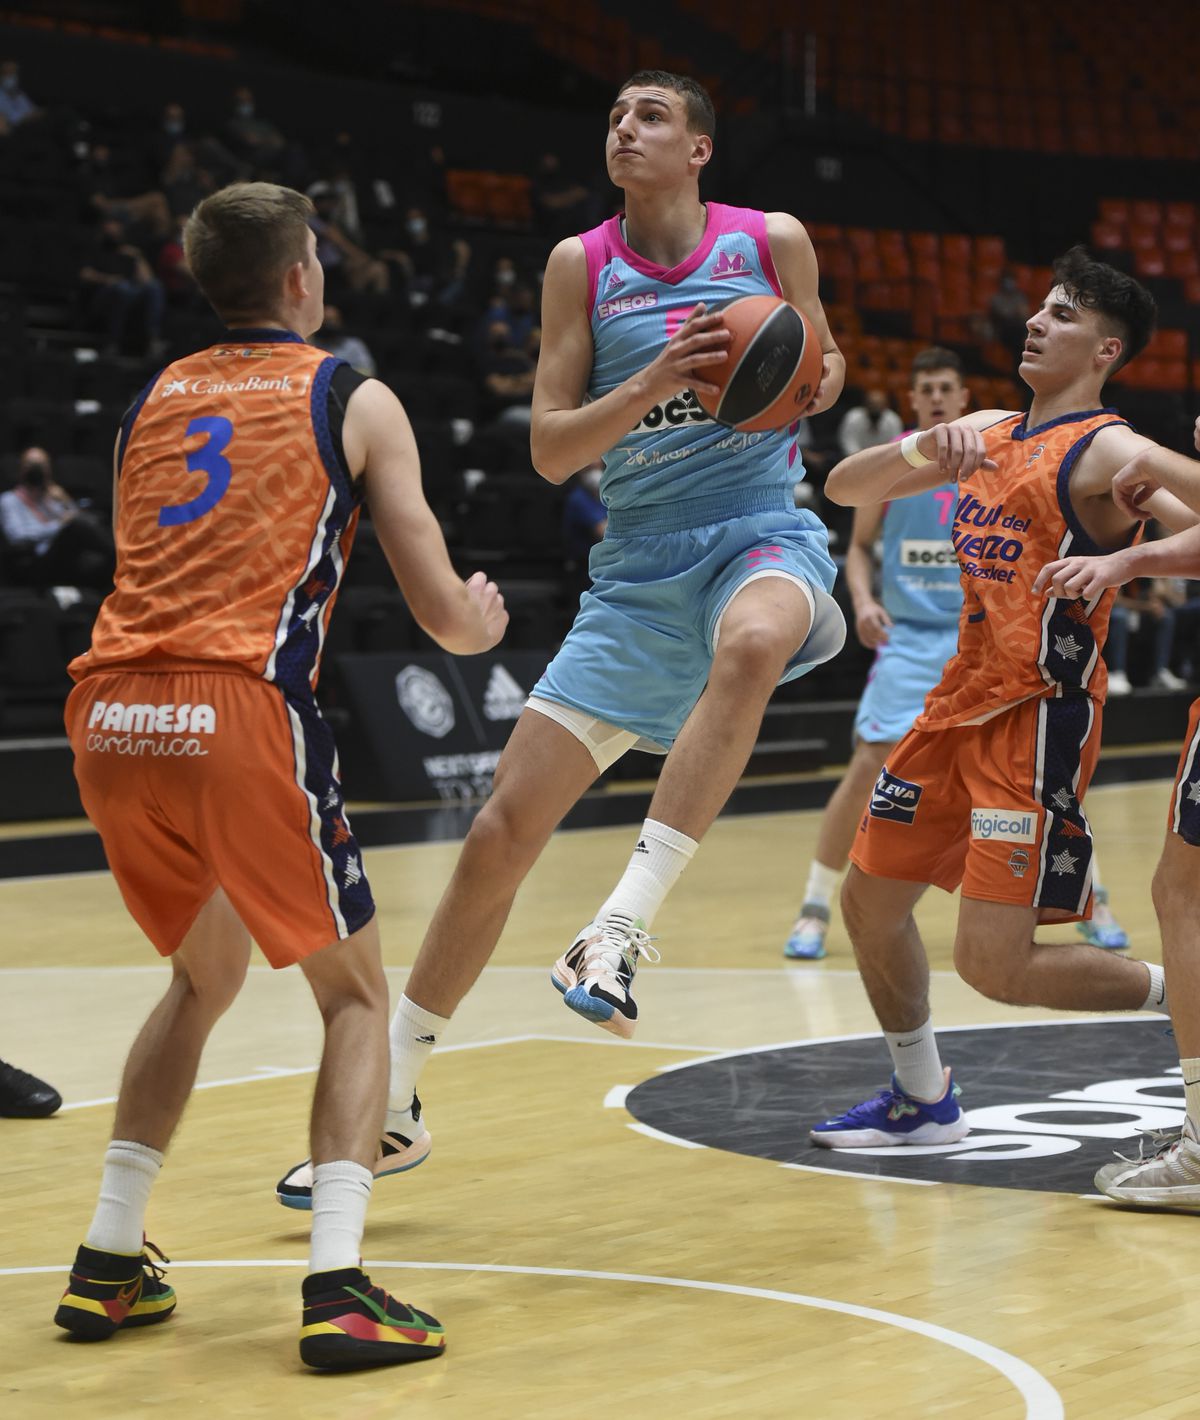 U18 Valencia Basket v U18 Mega SoccerBet Belgrade - Euroleague Basketball 2020-2021 Adidas Next Generation Tournament